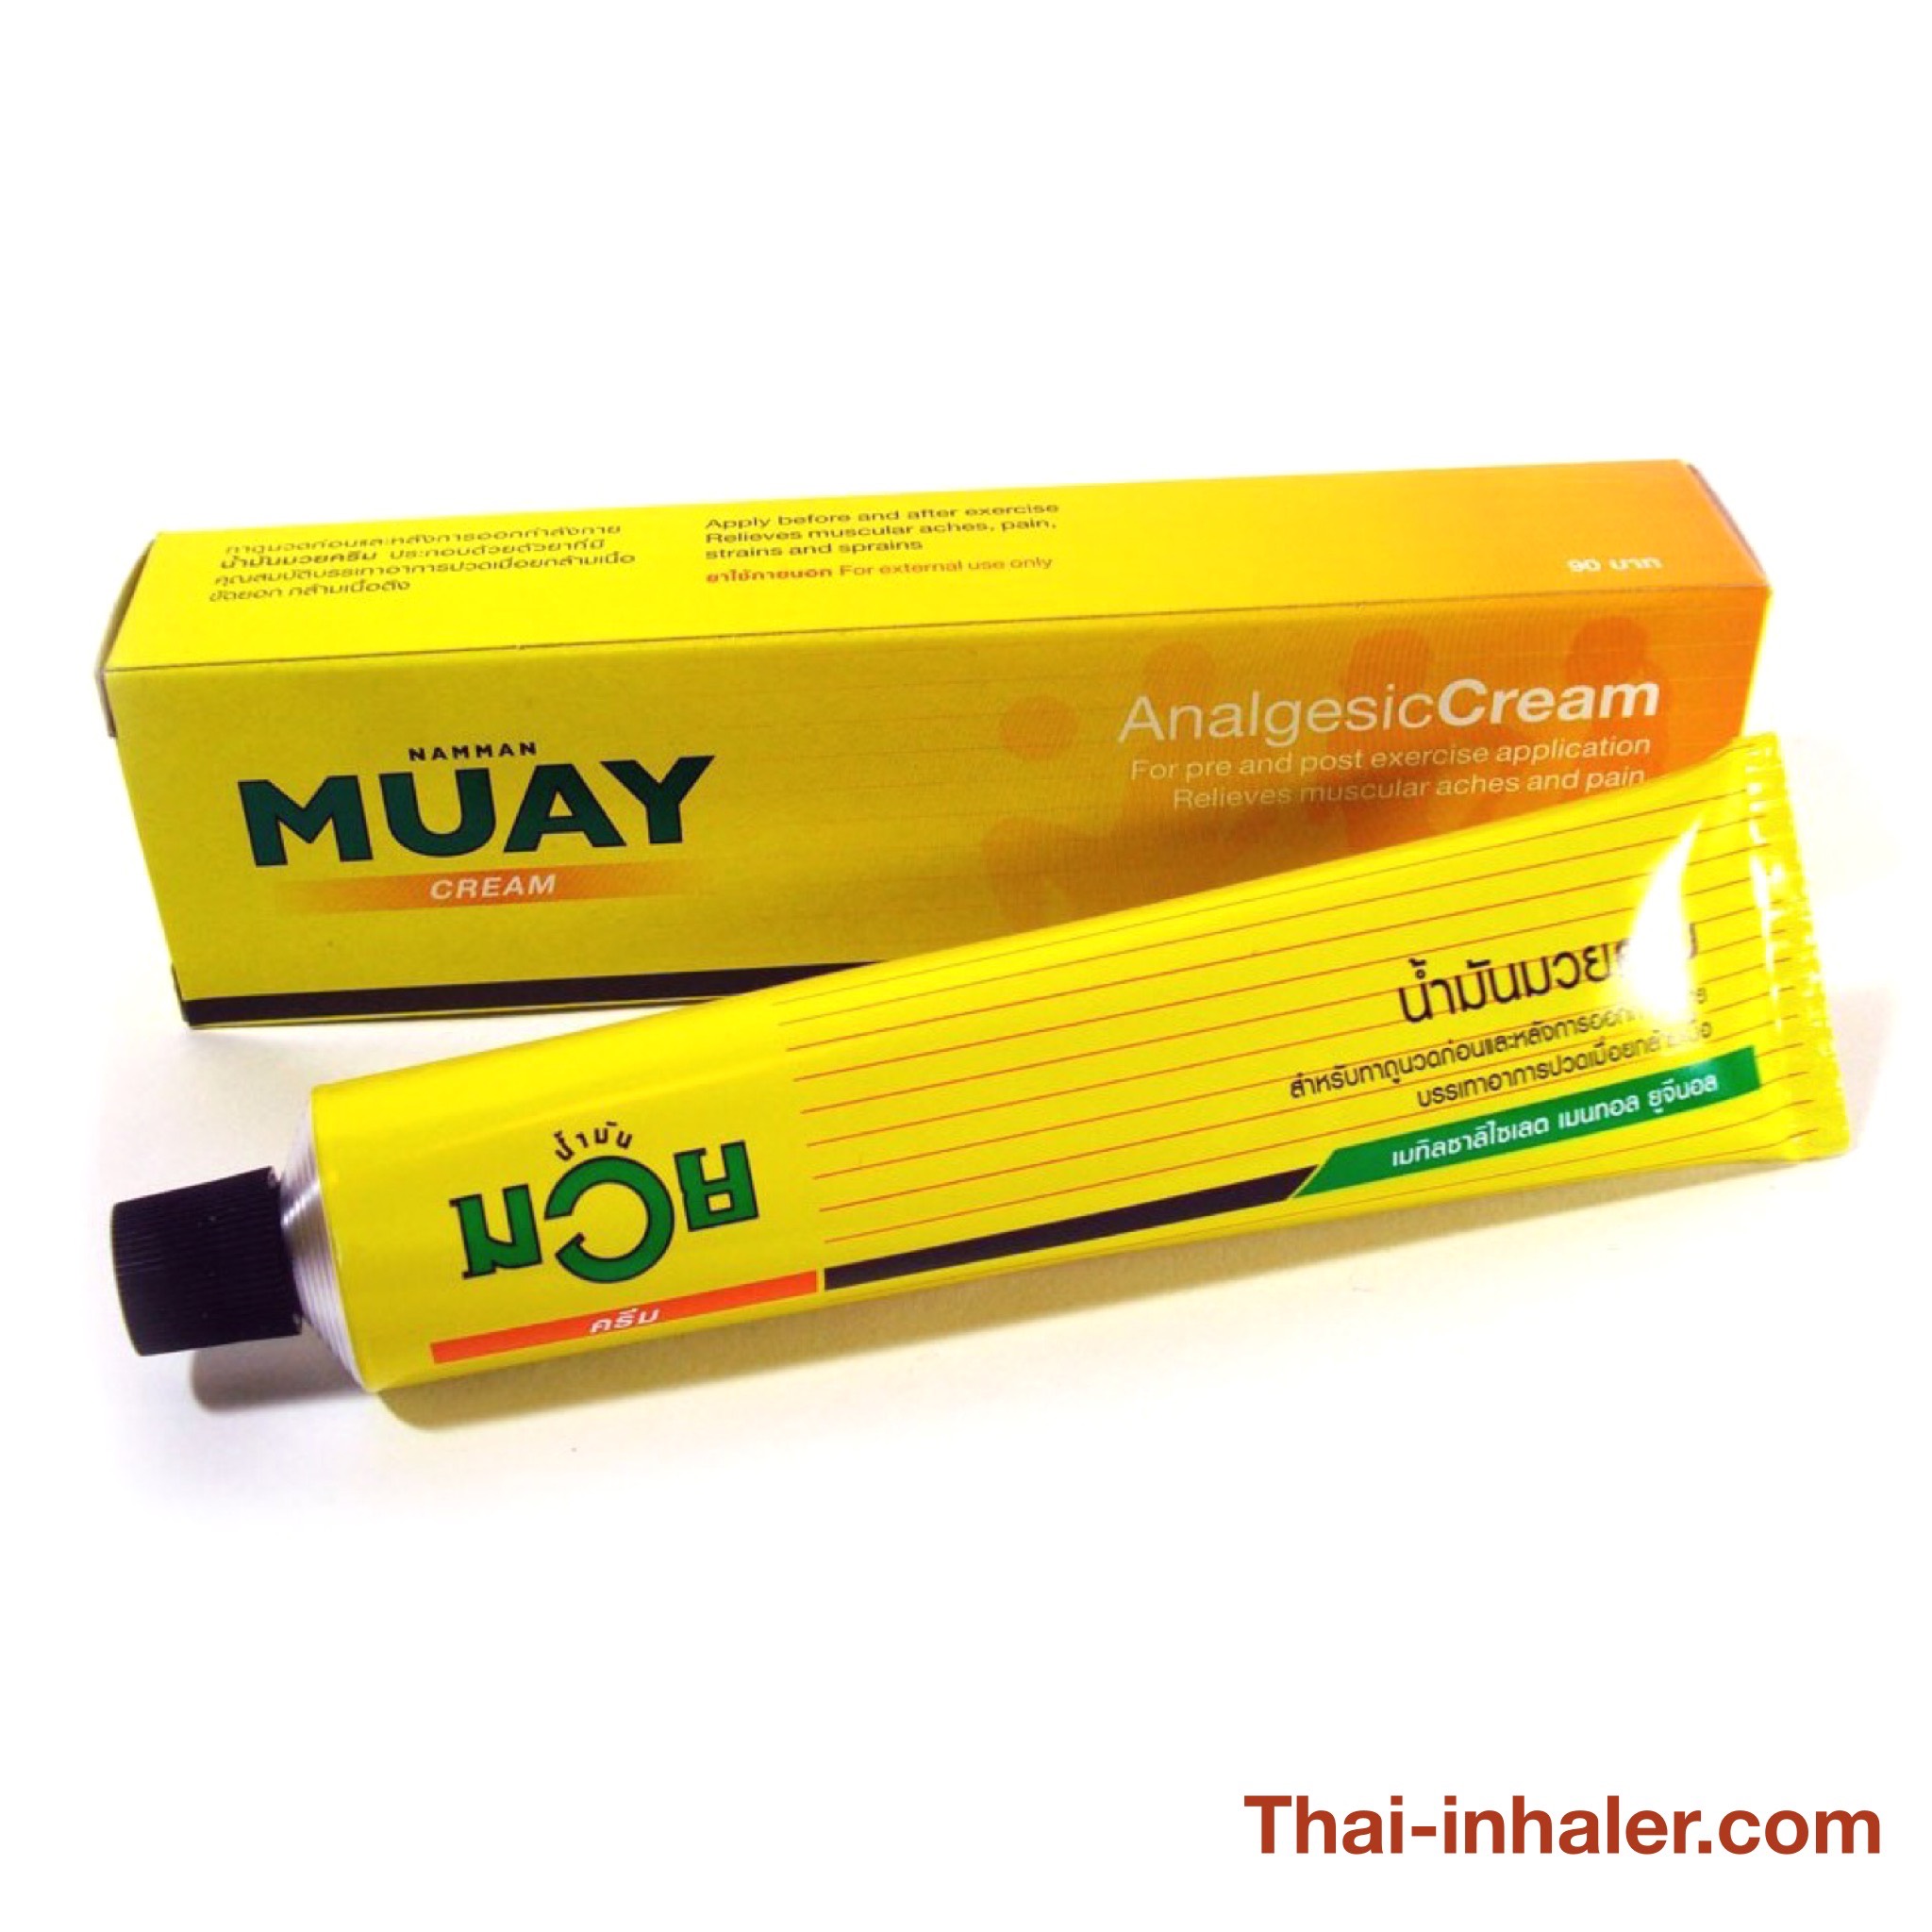 New Namman Muay Thai Boxing Analgesic Balm Cream 100g ( Pack of 3 )